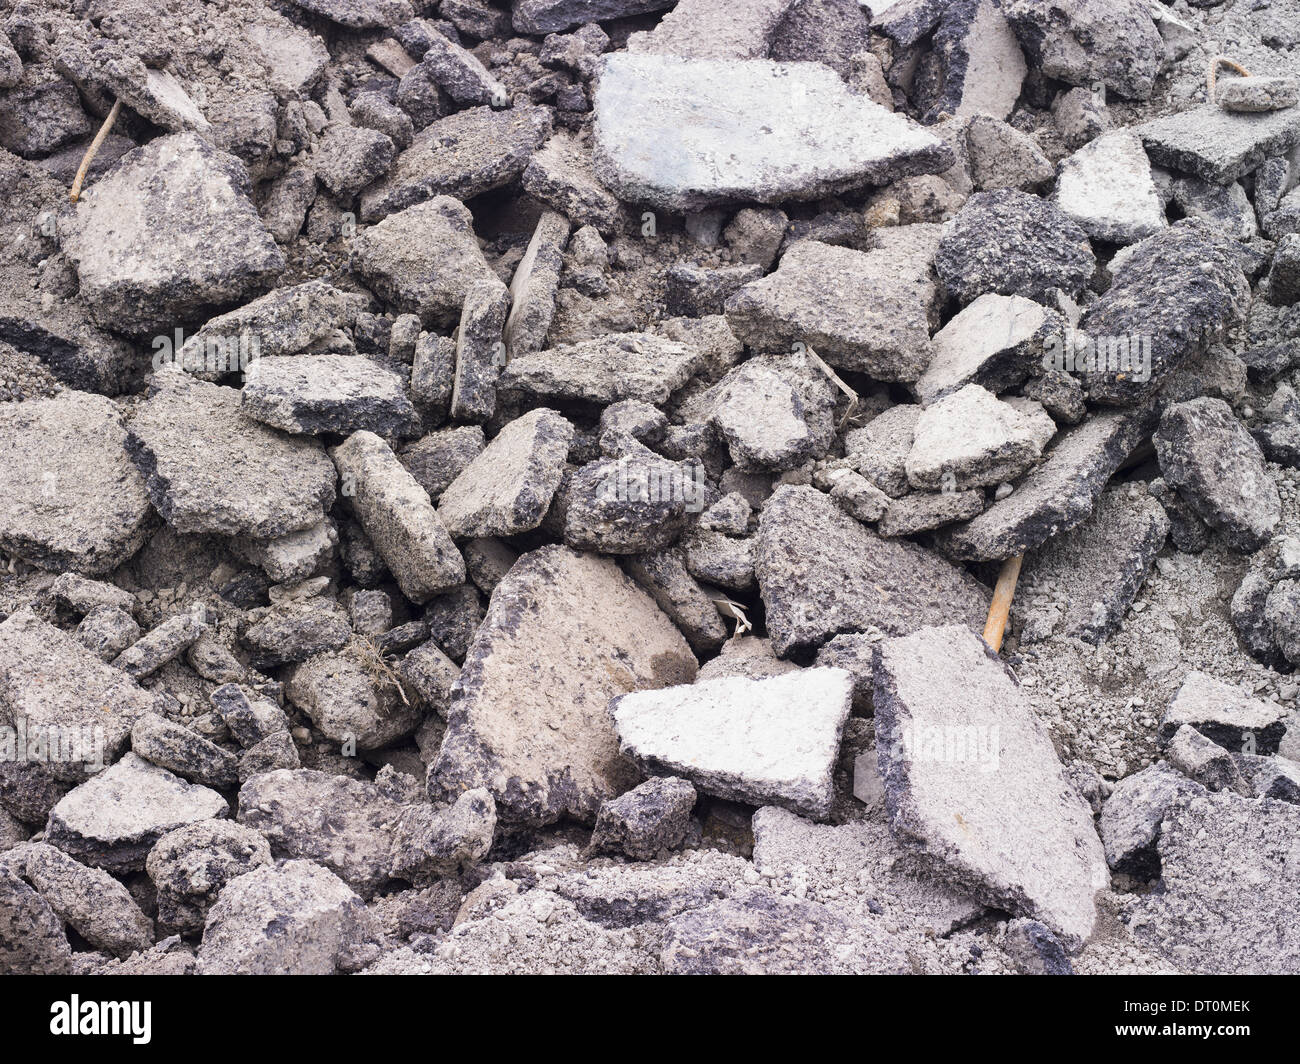 Washington USA Pile of asphalt concrete rubble construction site Stock Photo